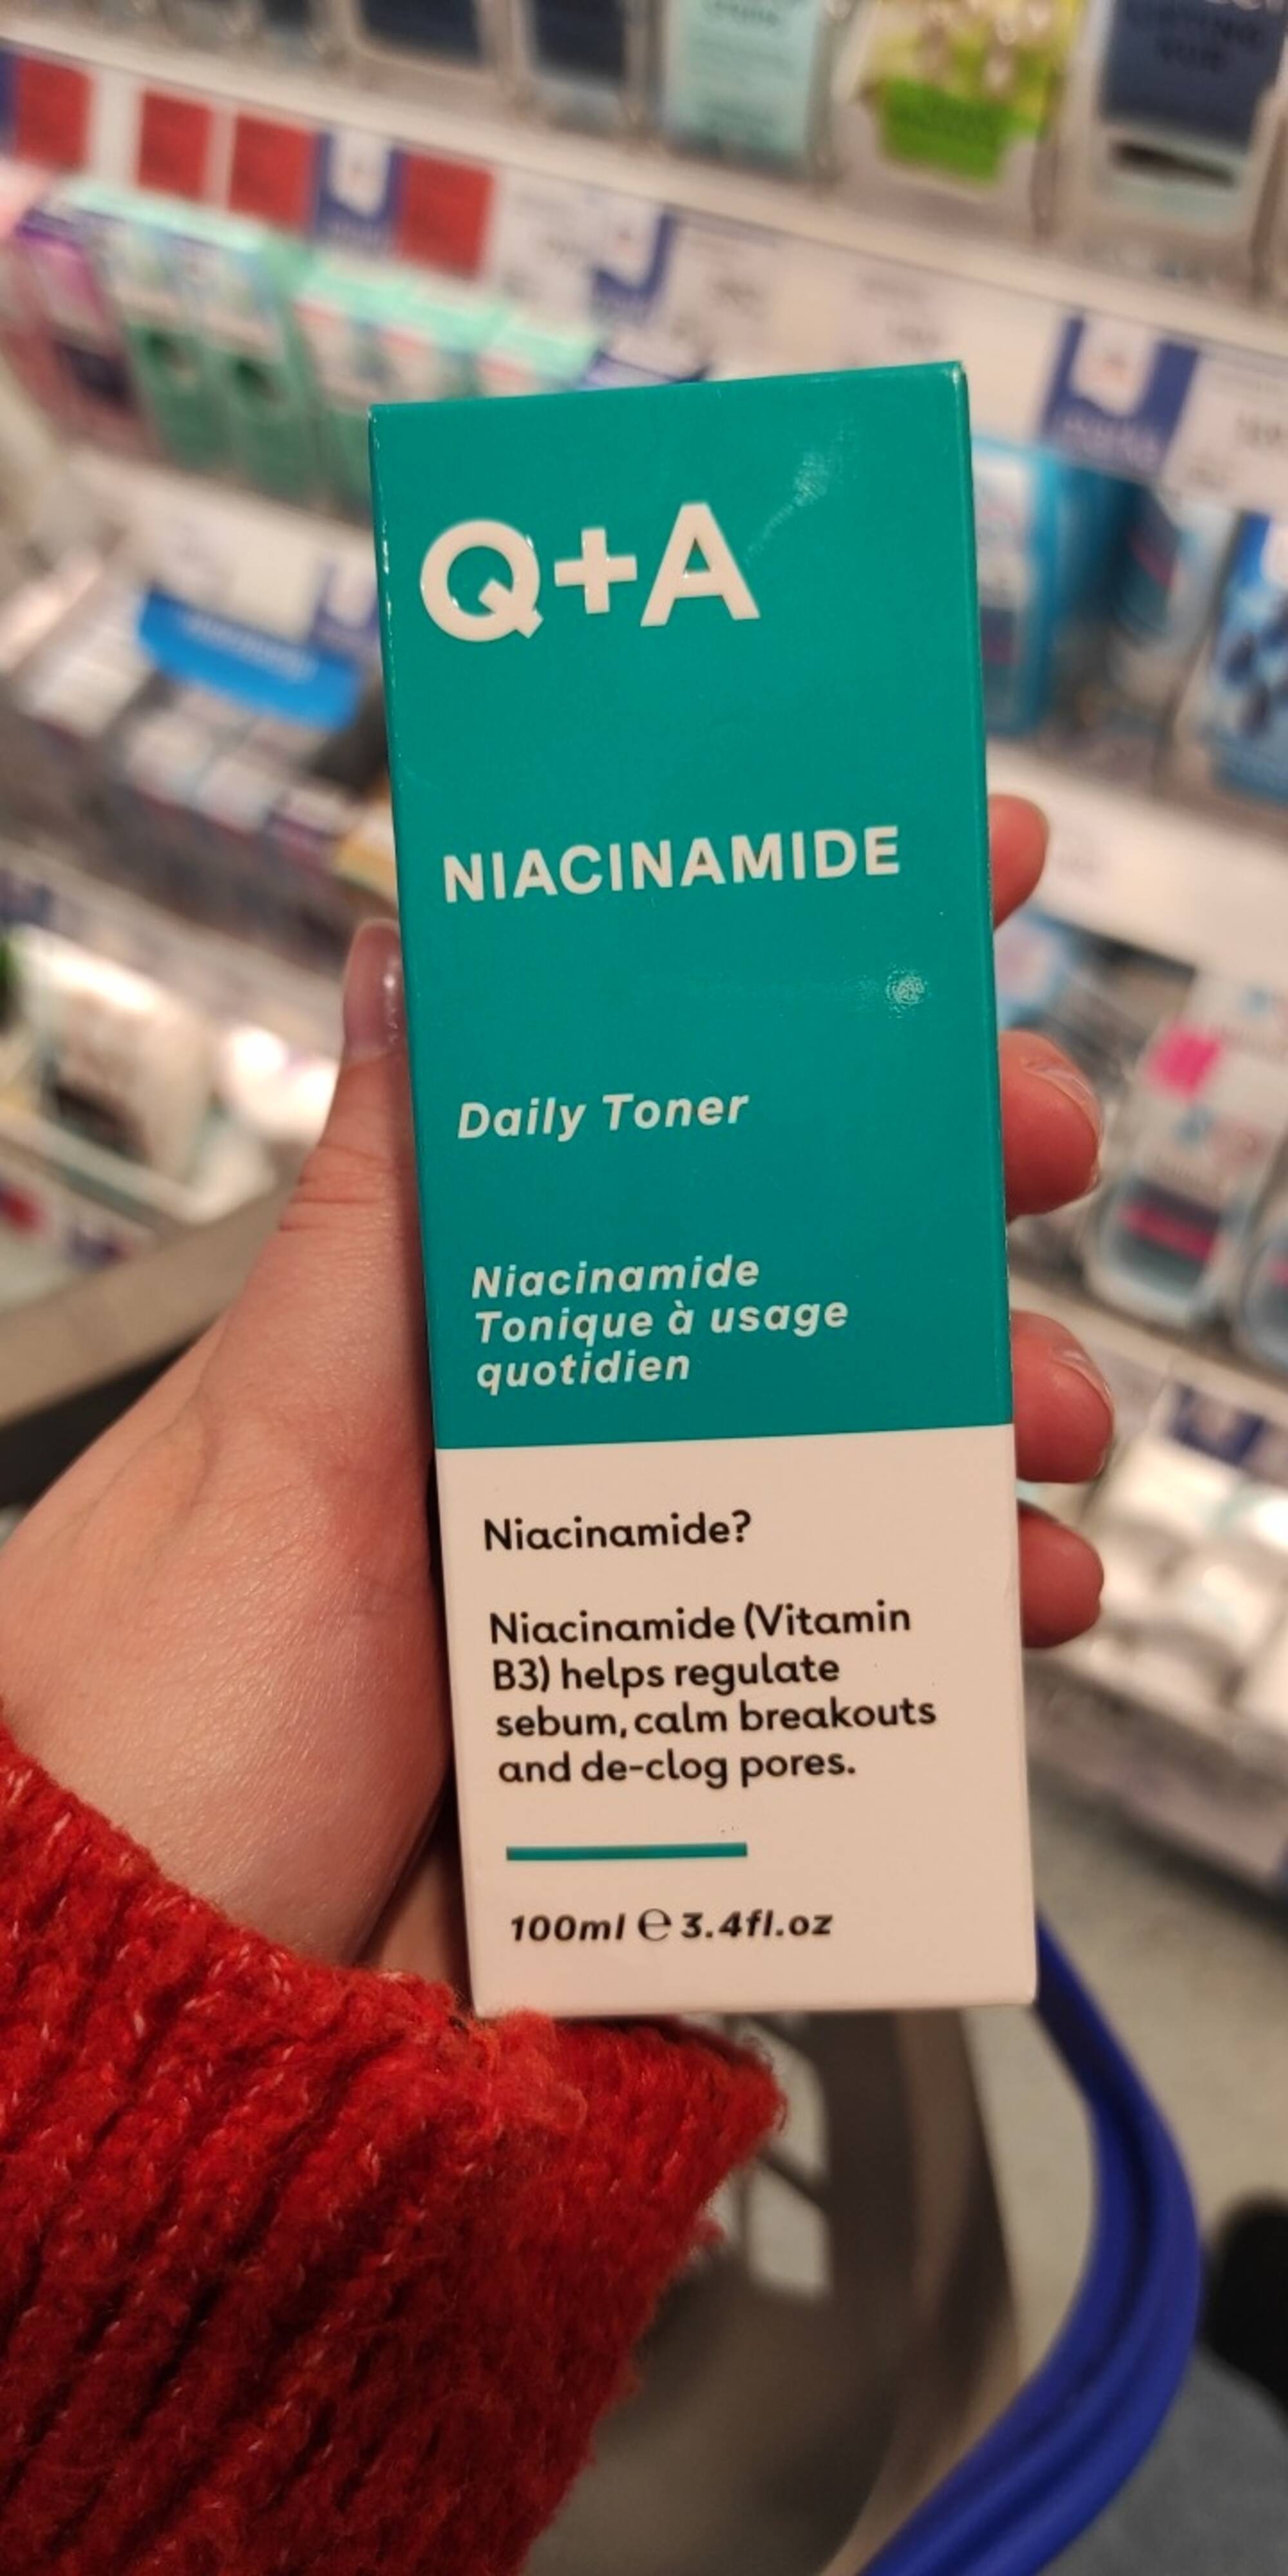 Q+A - Niacinamide - Tonique à usage quotidien